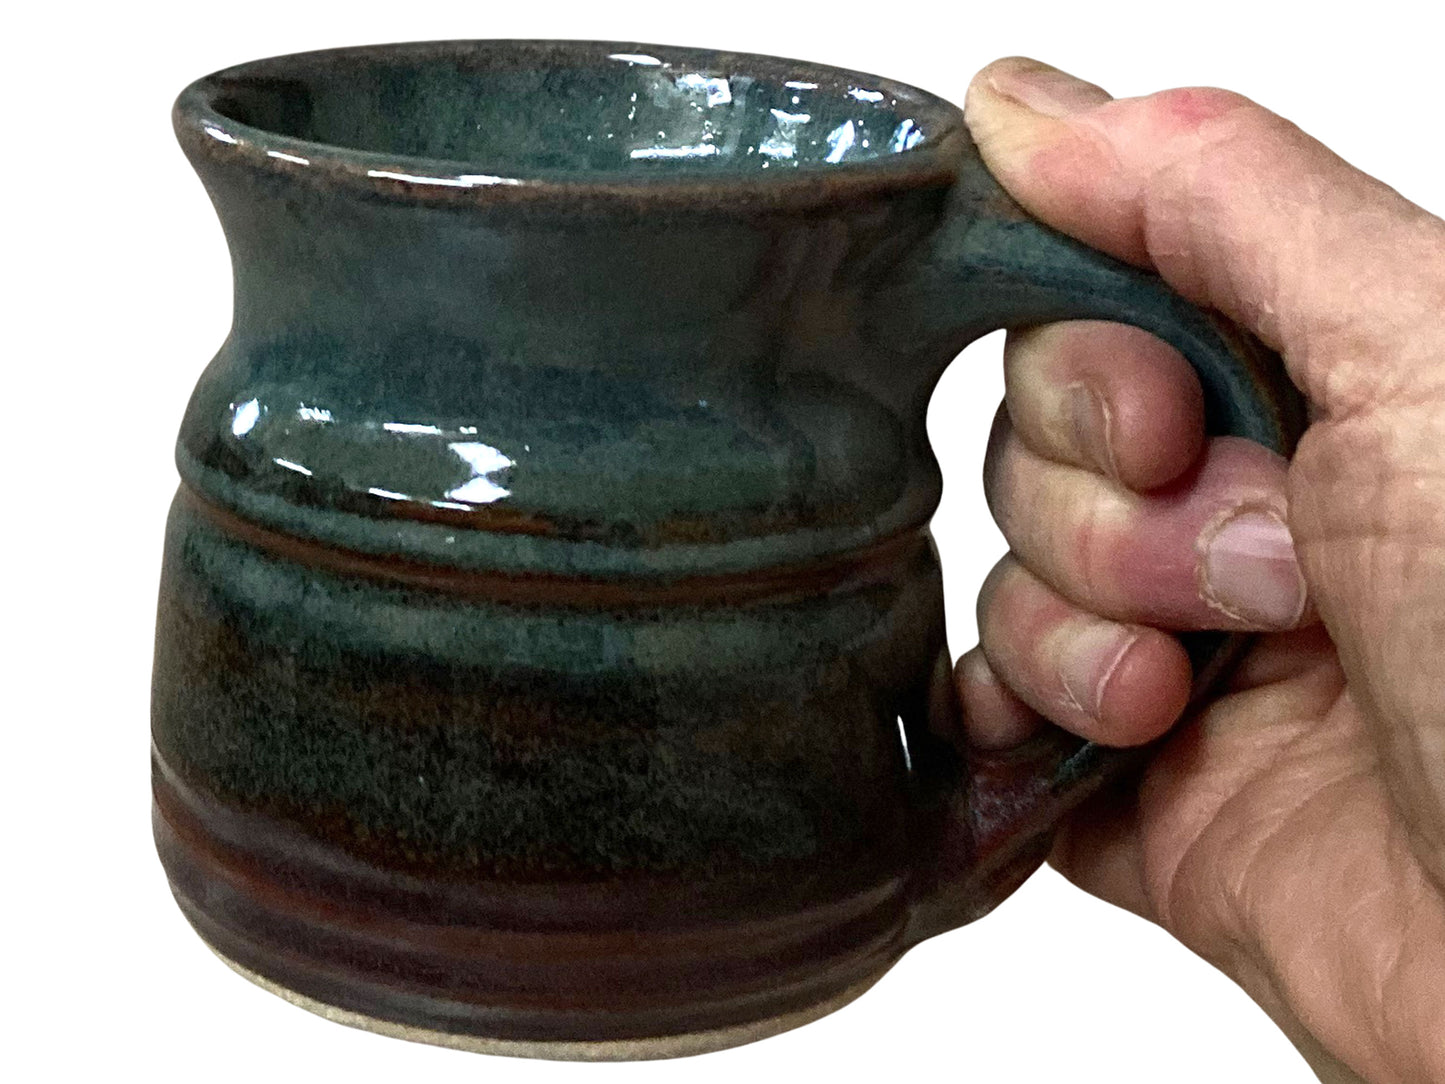 11 oz. Stoneware Coffee Mug